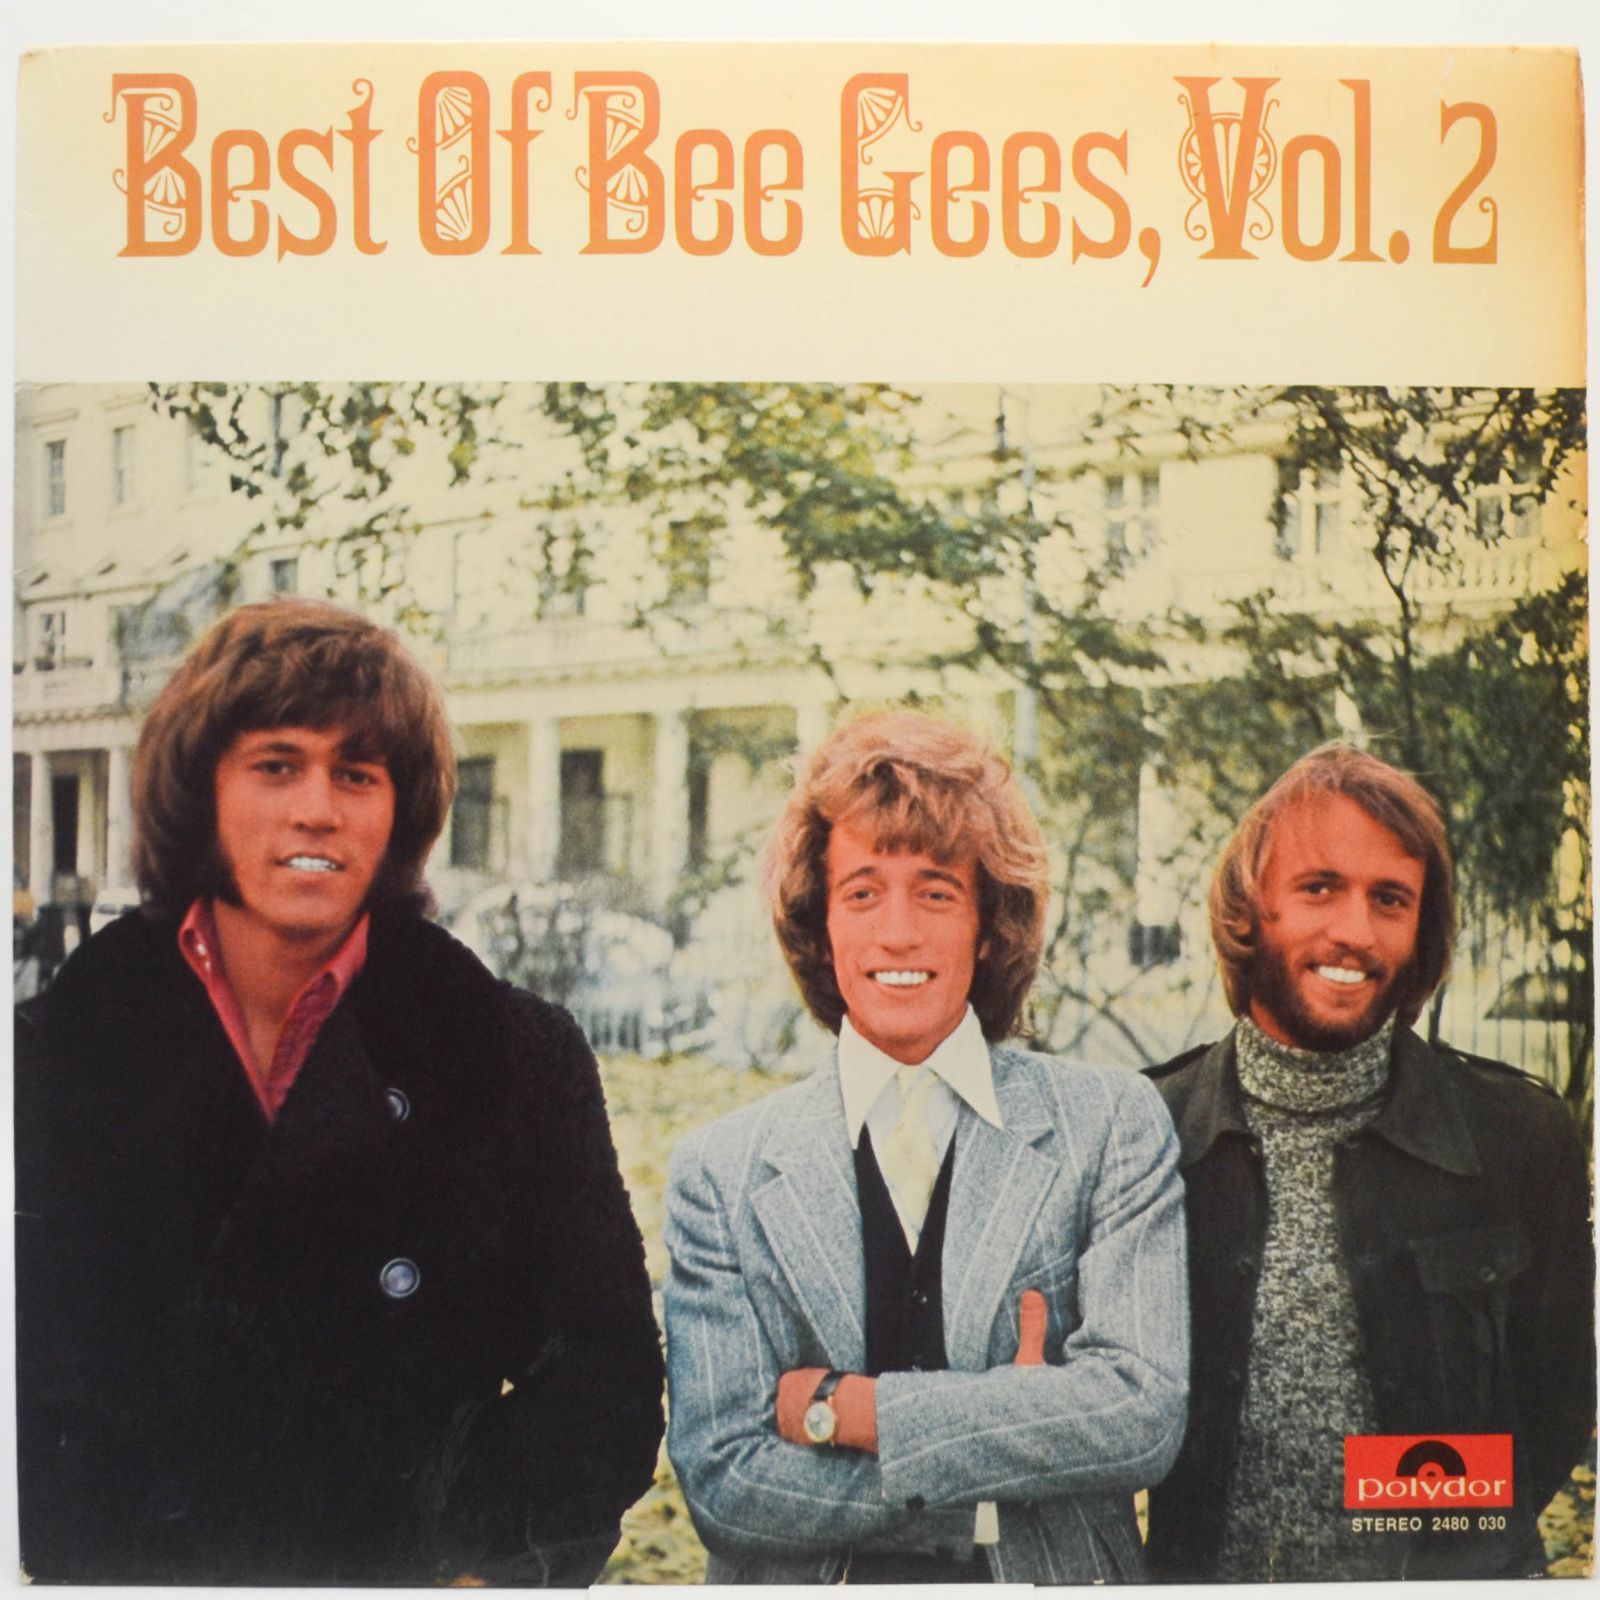 Bee Gees — Best Of Vol.2, 1971